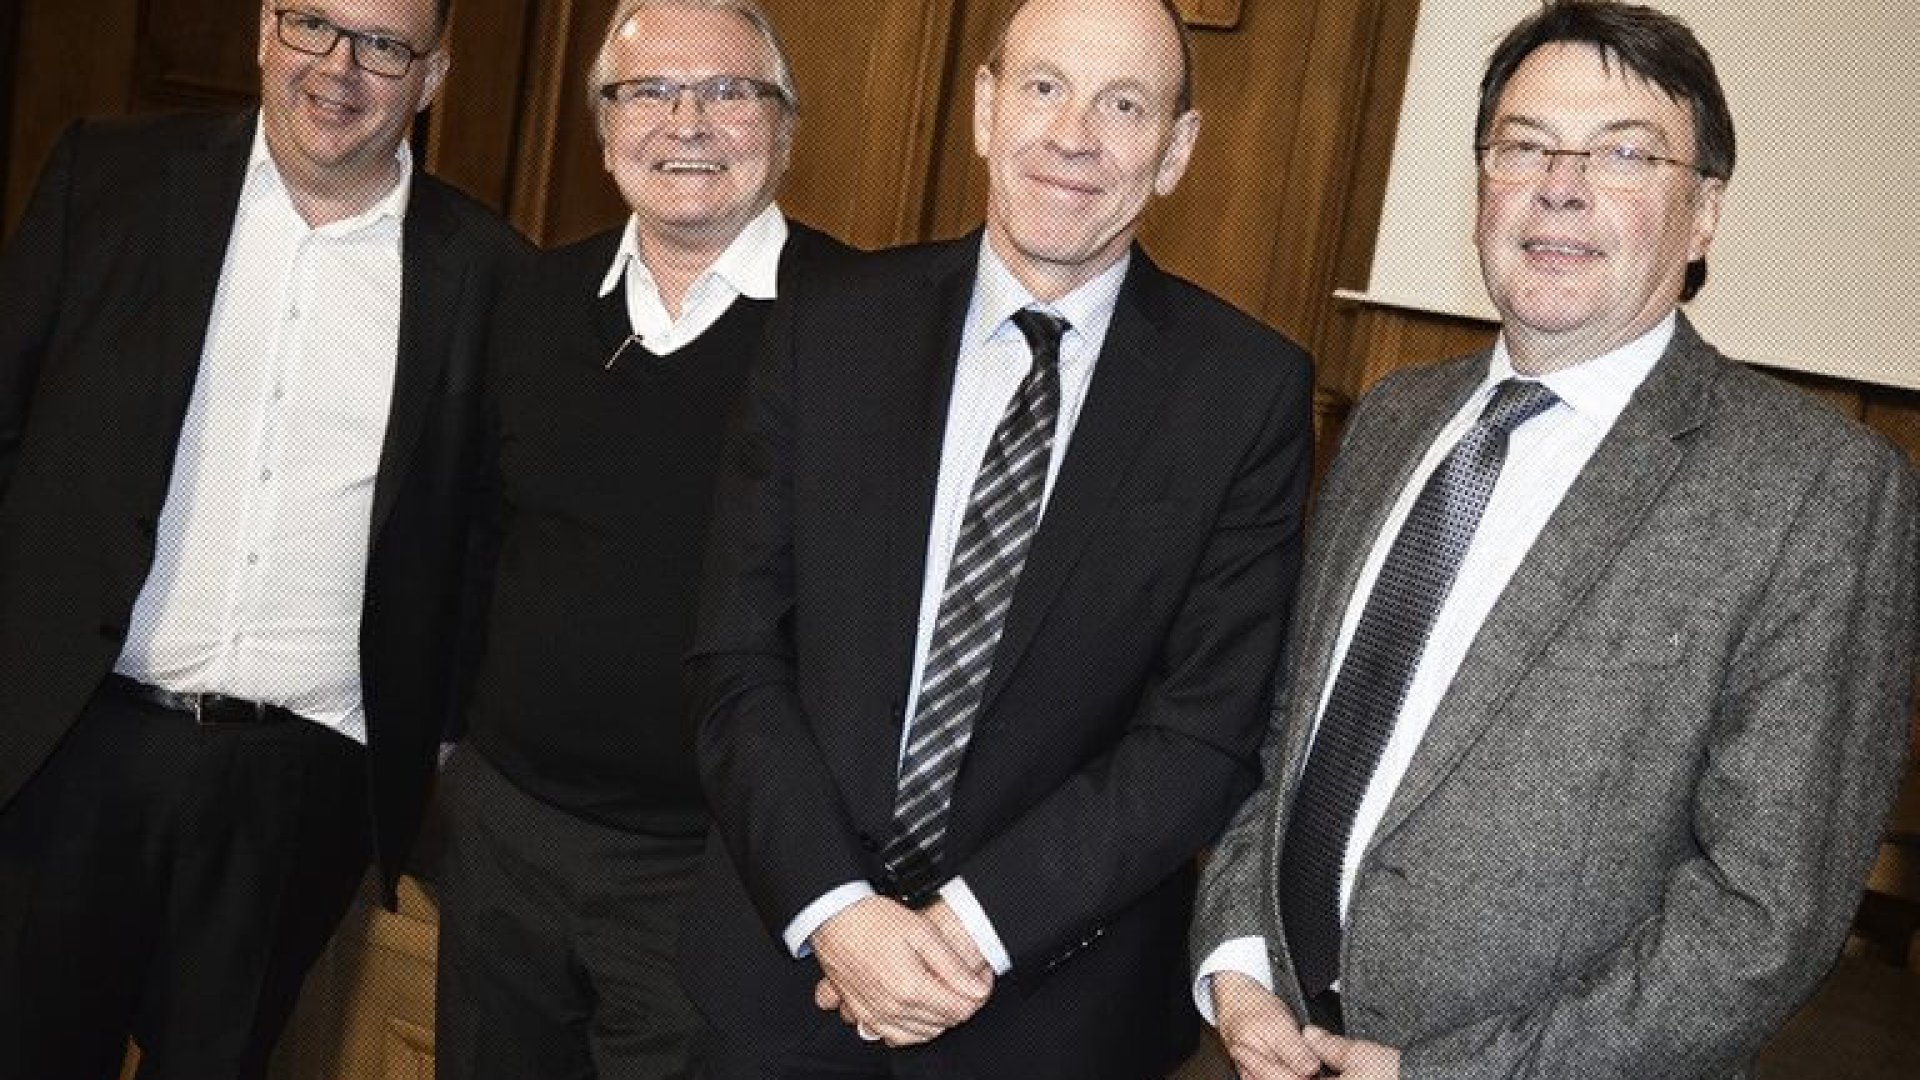 Apotheker Peter Stadtmann, Claus Schwarz (ehem. Stadtspiegel-Chef), Oberbürgermeister Bernd Tischler (SPD), CDU-Chef Hermann Hirschfelder (v.l.n.r.)

CORRECTIV